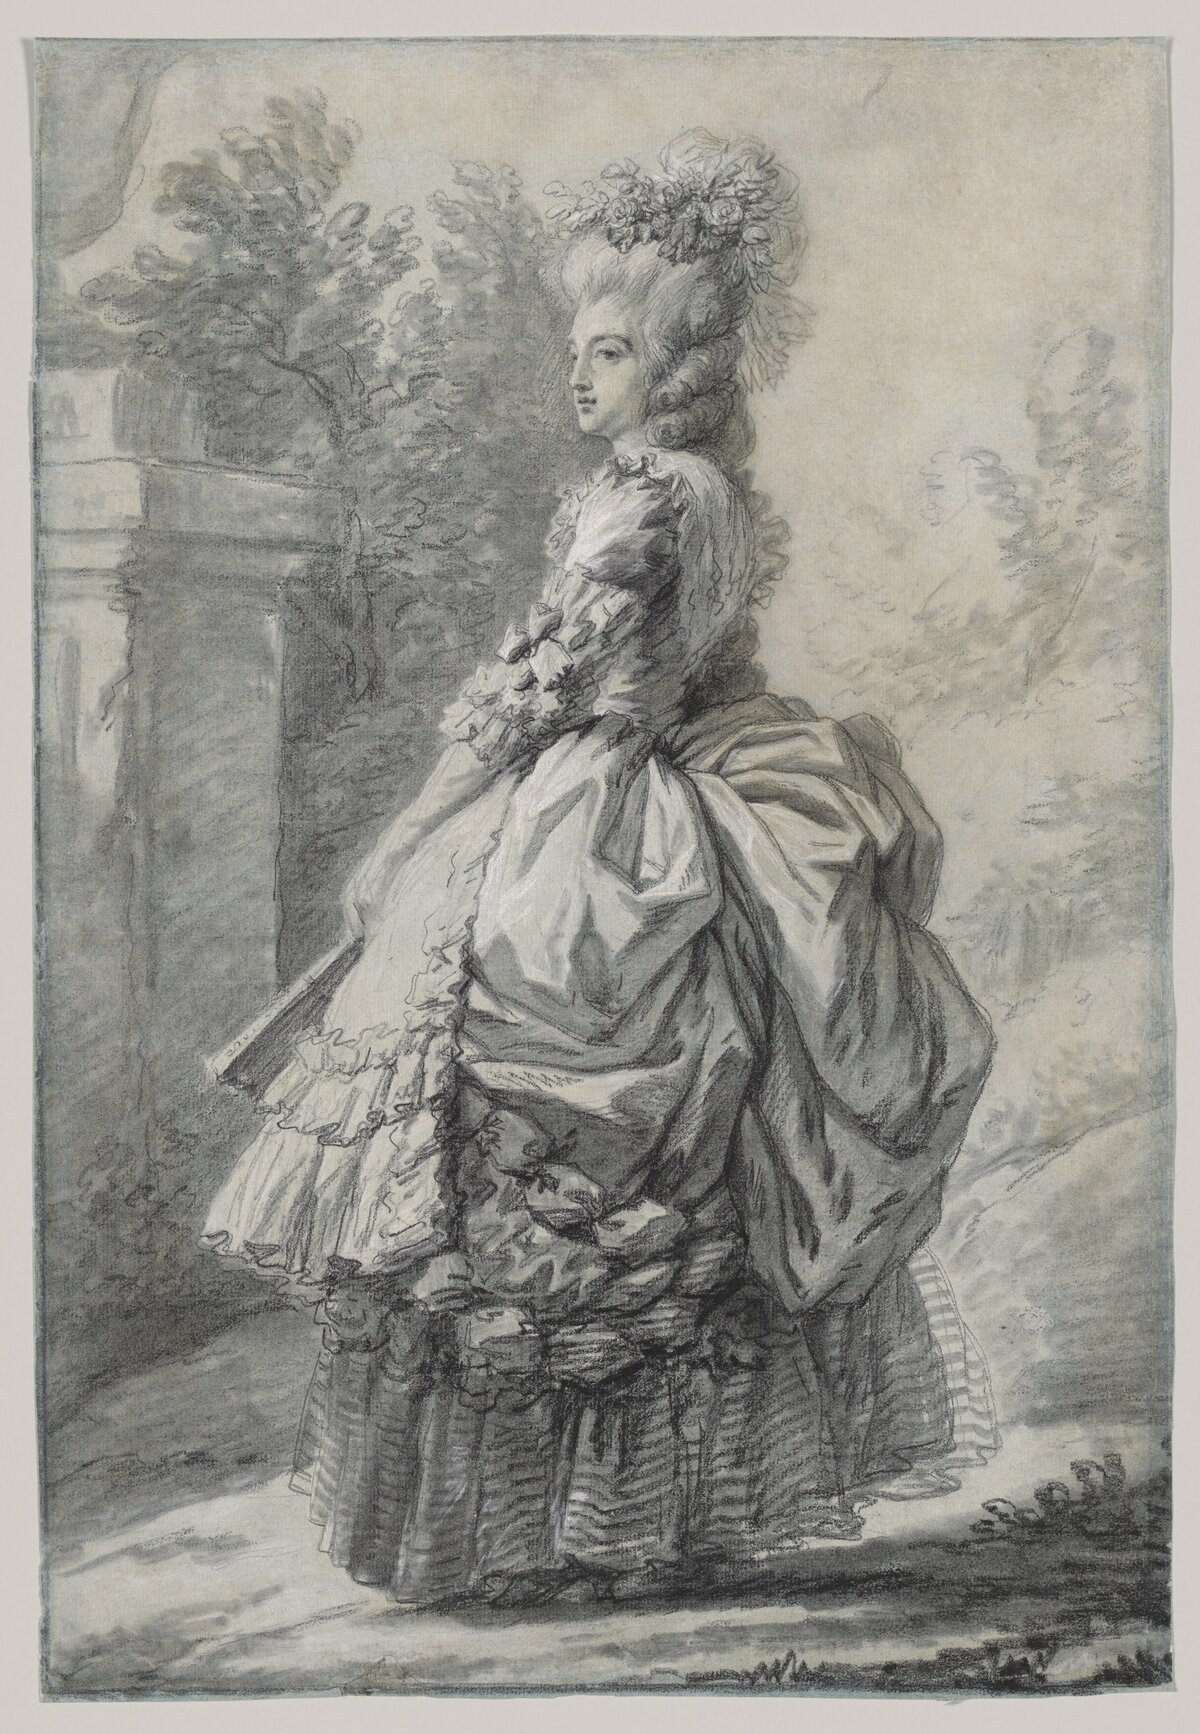 Marie Antoinette Maria Antonia Josepha Joanna, ismertebb nevén Marie Antoinette 1755. november 2-án született Bécsben. Franciaország utolsó királynője Madame Deficit gúnynéven a monarchia túlkapásainak szimbólumává vált, számtalan röpirat vádolta pazarlással és házasságtöréssel. A pénzügyi káosz és a rossz termés országszerte megemelte a gabonaárakat, így Marie Antoinette extravagáns életmódjával gyűlölettel teli kritikák kereszttüzébe került. Kilenc hónappal férje, XVI. Lajos után a forradalmi törvényszék parancsára 1793-ban, 37 éves korában lefejezték.
